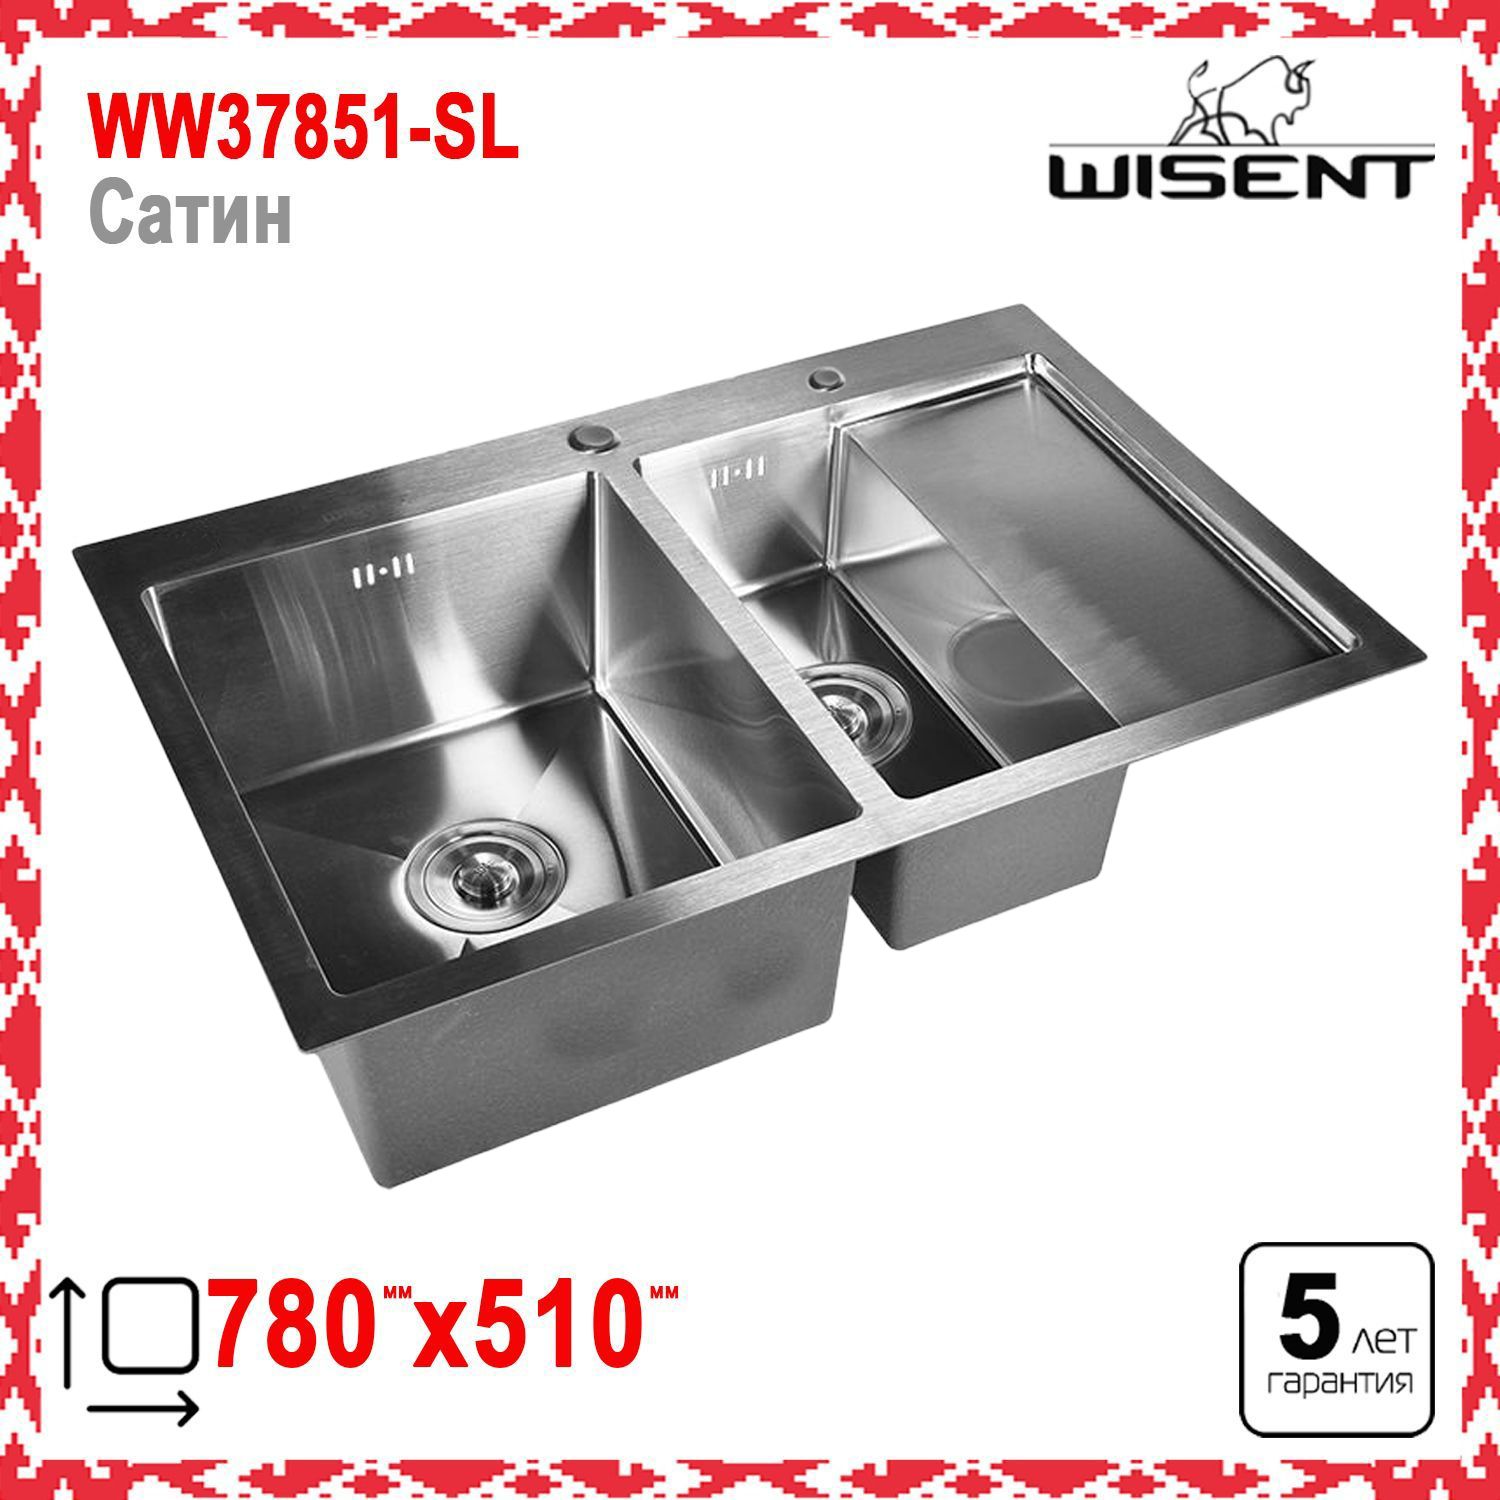 Мойка для кухни wisent. Мойка врезная прямоугольная 78х20х51 см Wisent. Wisent 7851-SL. Комплект кухонная мойка из нержавеющей стали Wisent 5044.